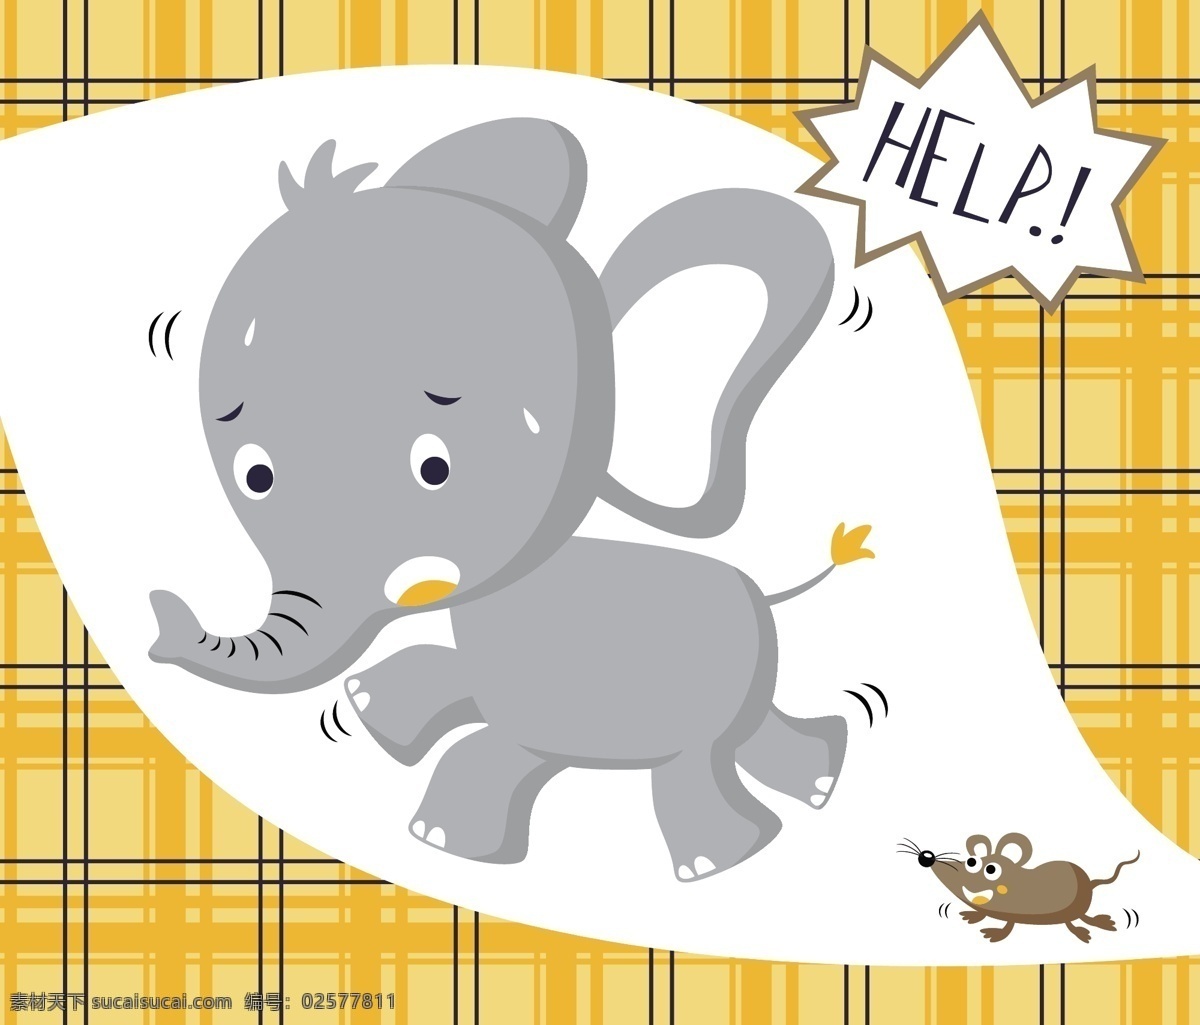 委屈 呆 萌 大象 儿童 插画 黄色底纹 格子底纹 动物 儿童插画 老鼠 黑色英文 可爱表情